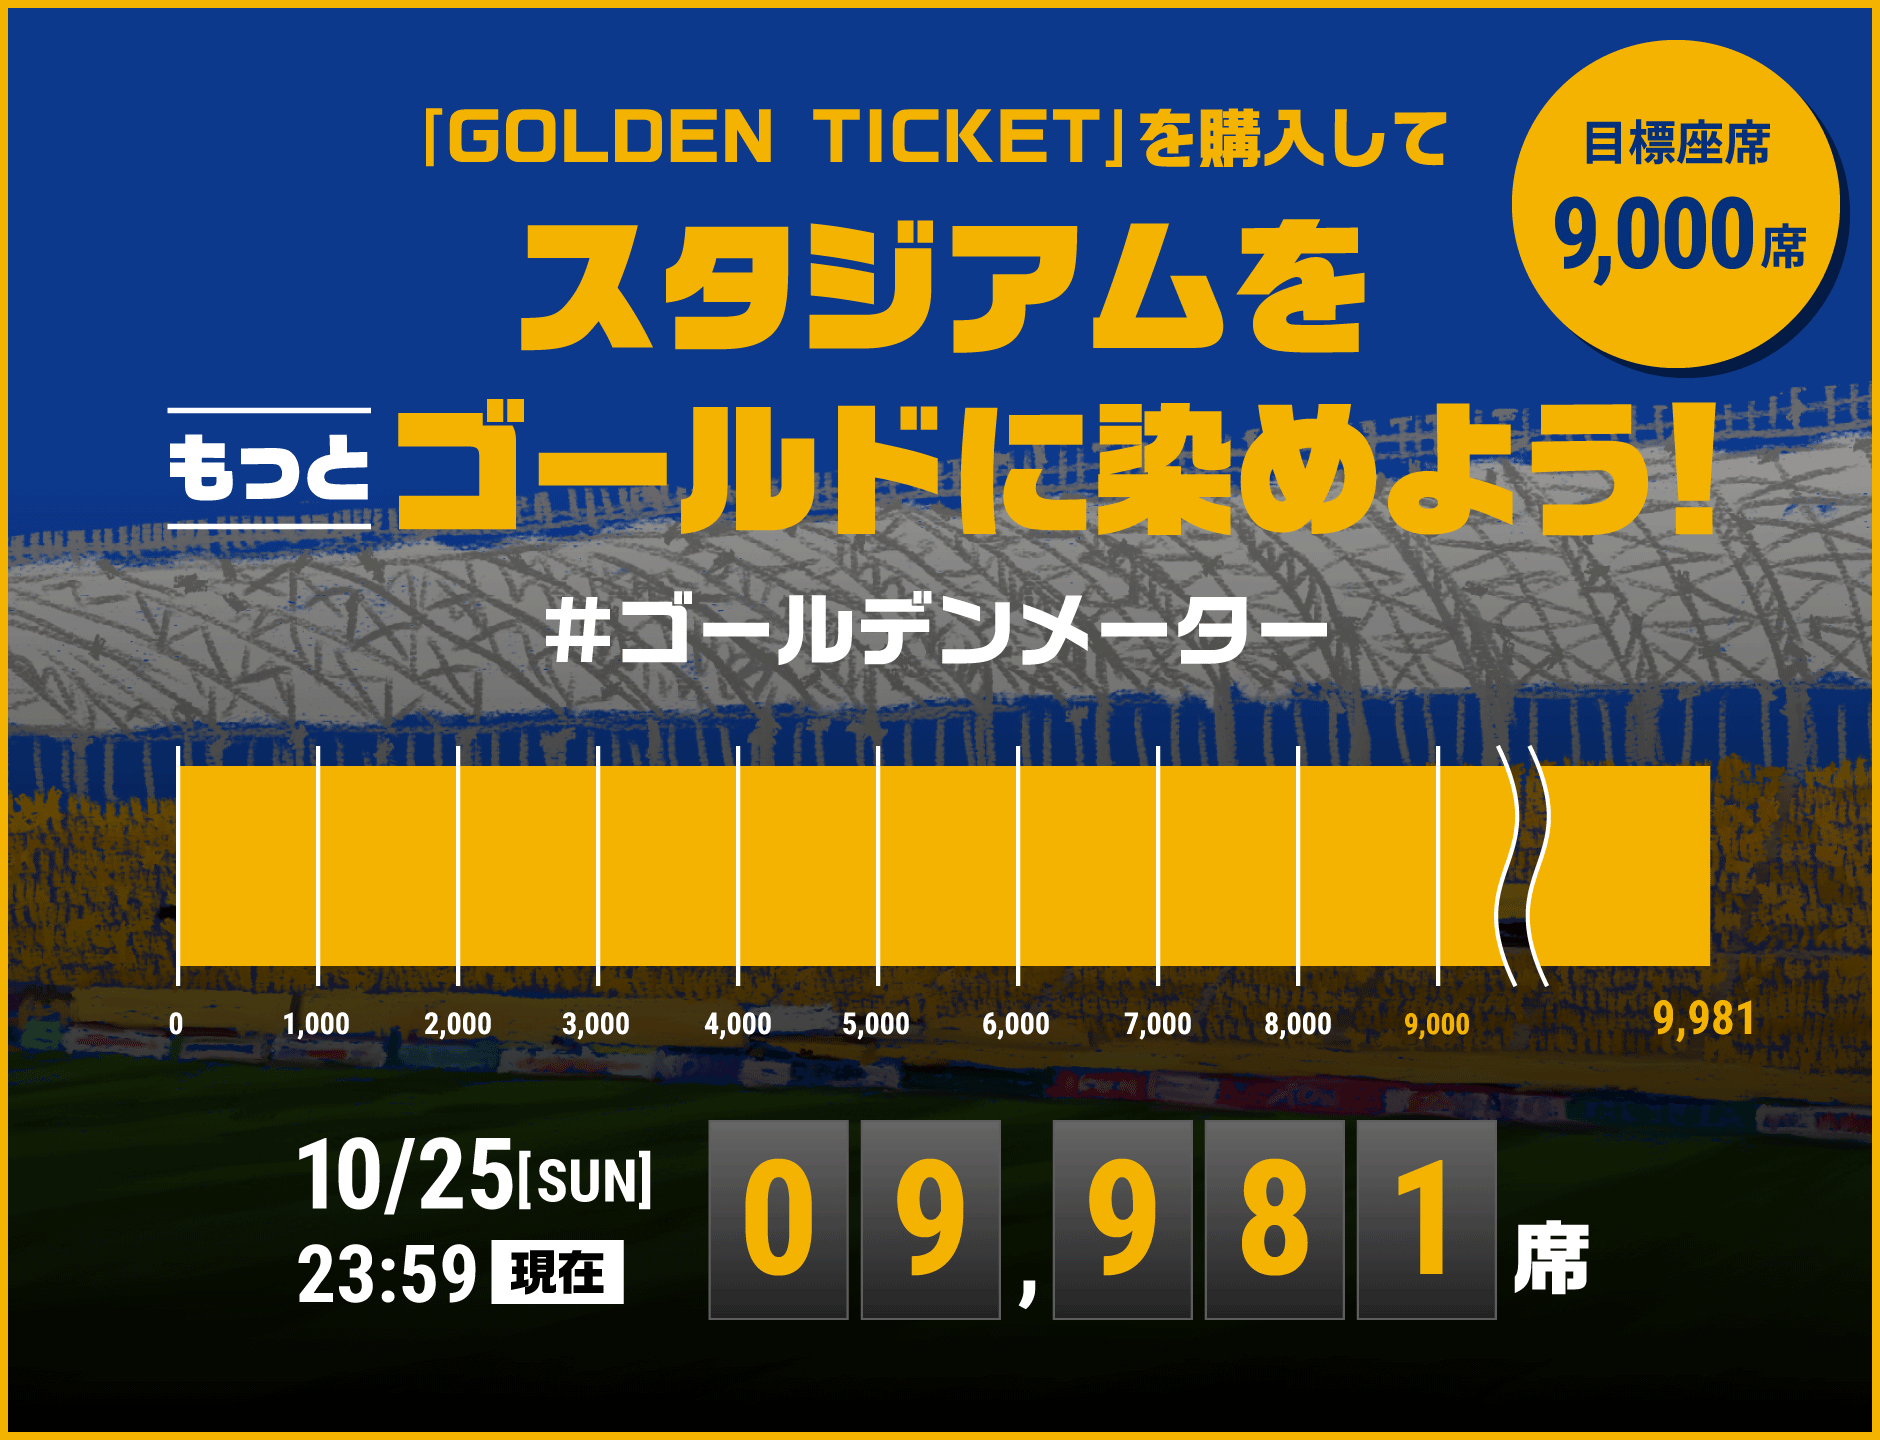 GOLDEN TICKETを購入してスタジアムをゴールドに染めよう！目標座席9,000席